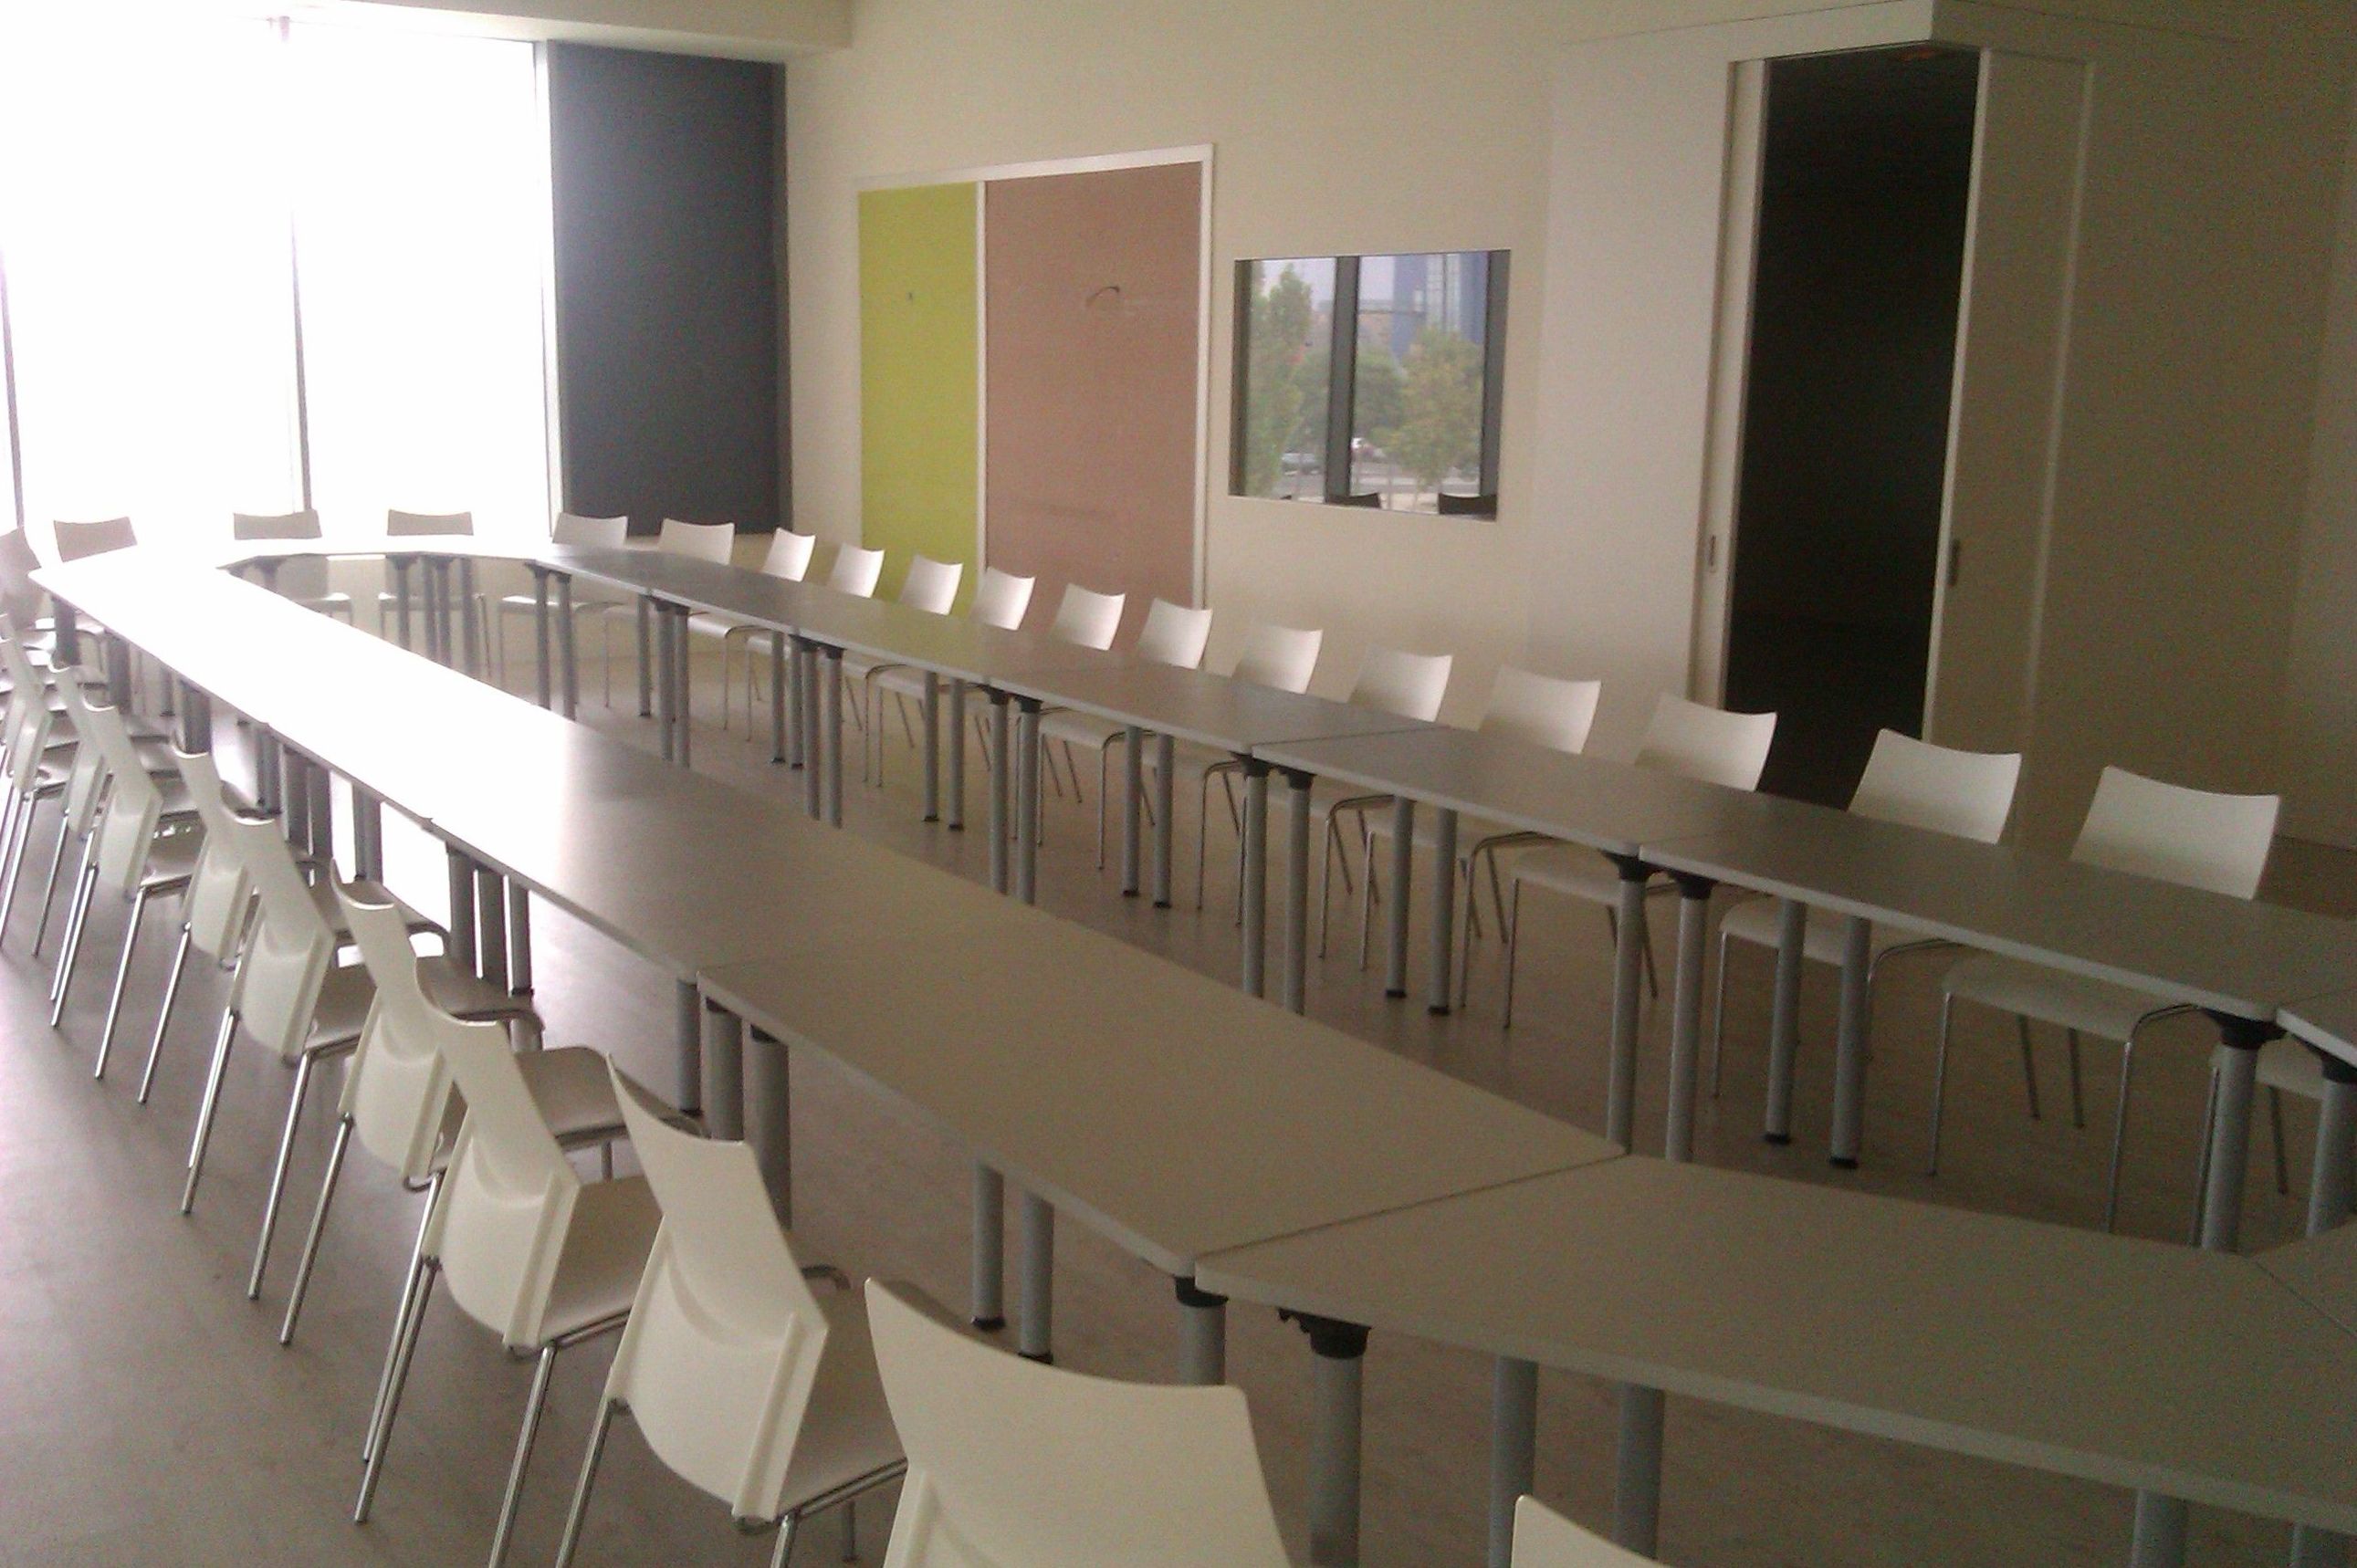 Alquiler de mesas y sillas para reuniones y cursos de formación.